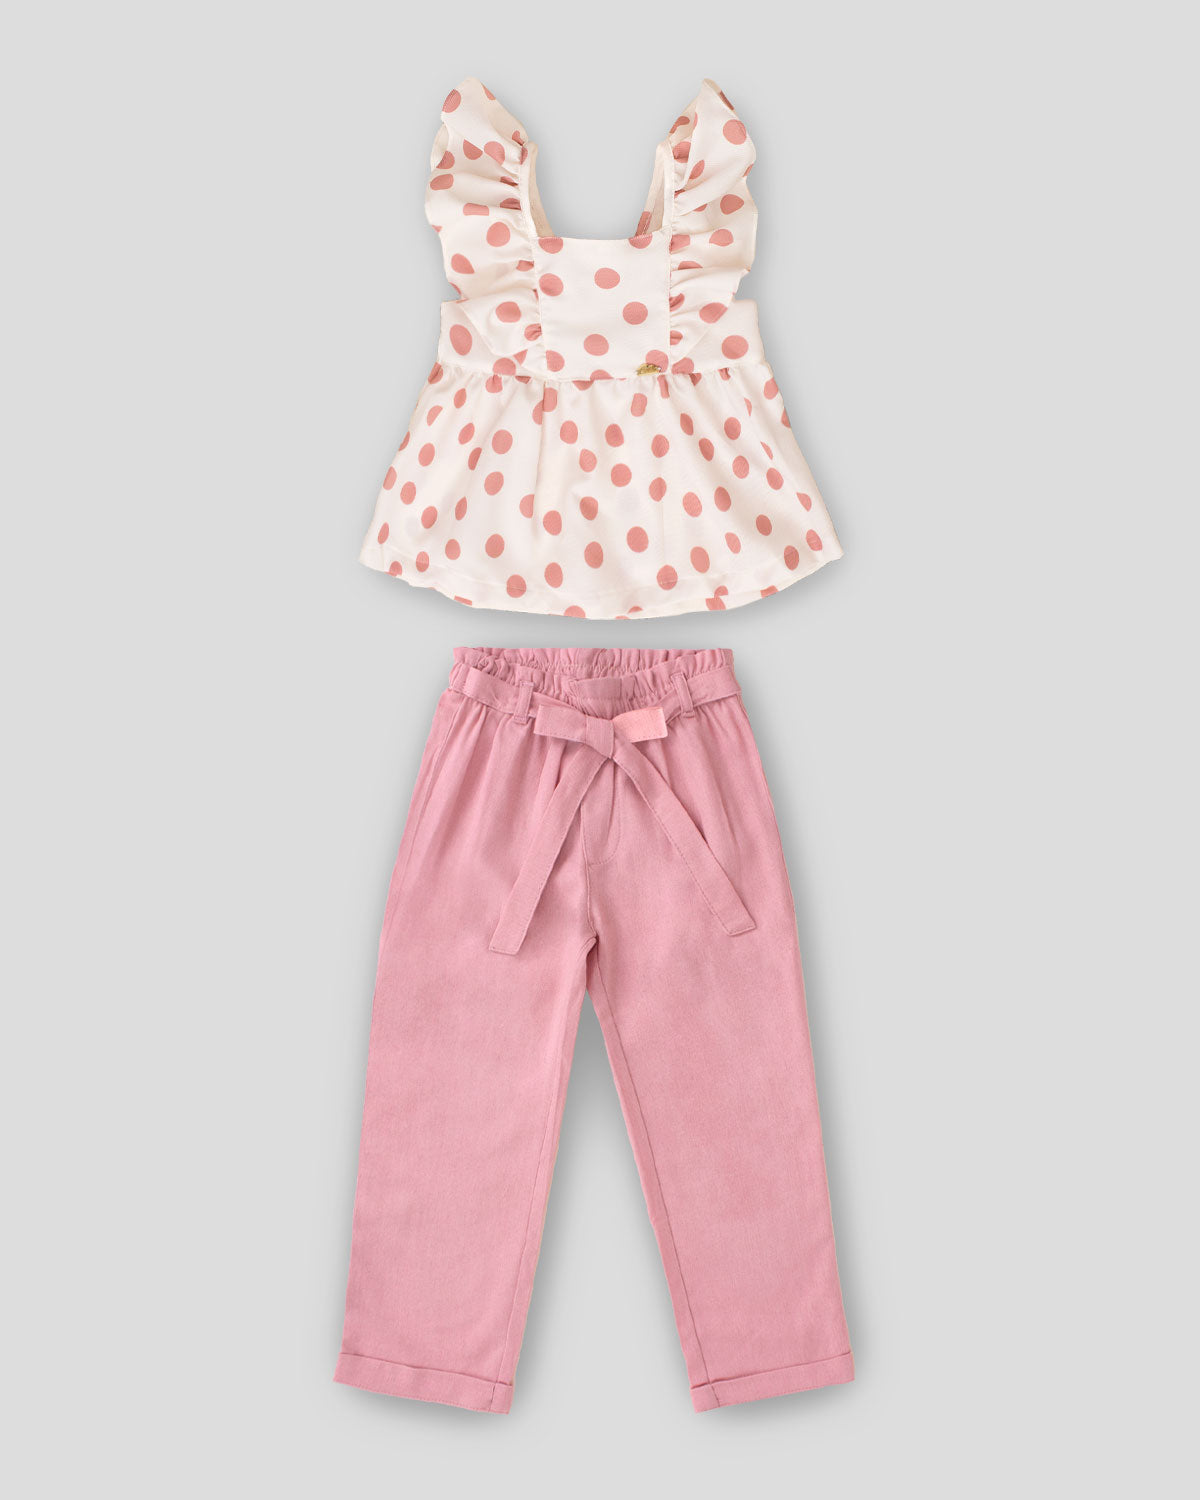 Conjunto blusa con lunares palo de rosa, moño en espalda y pantalón palo de rosa para niña